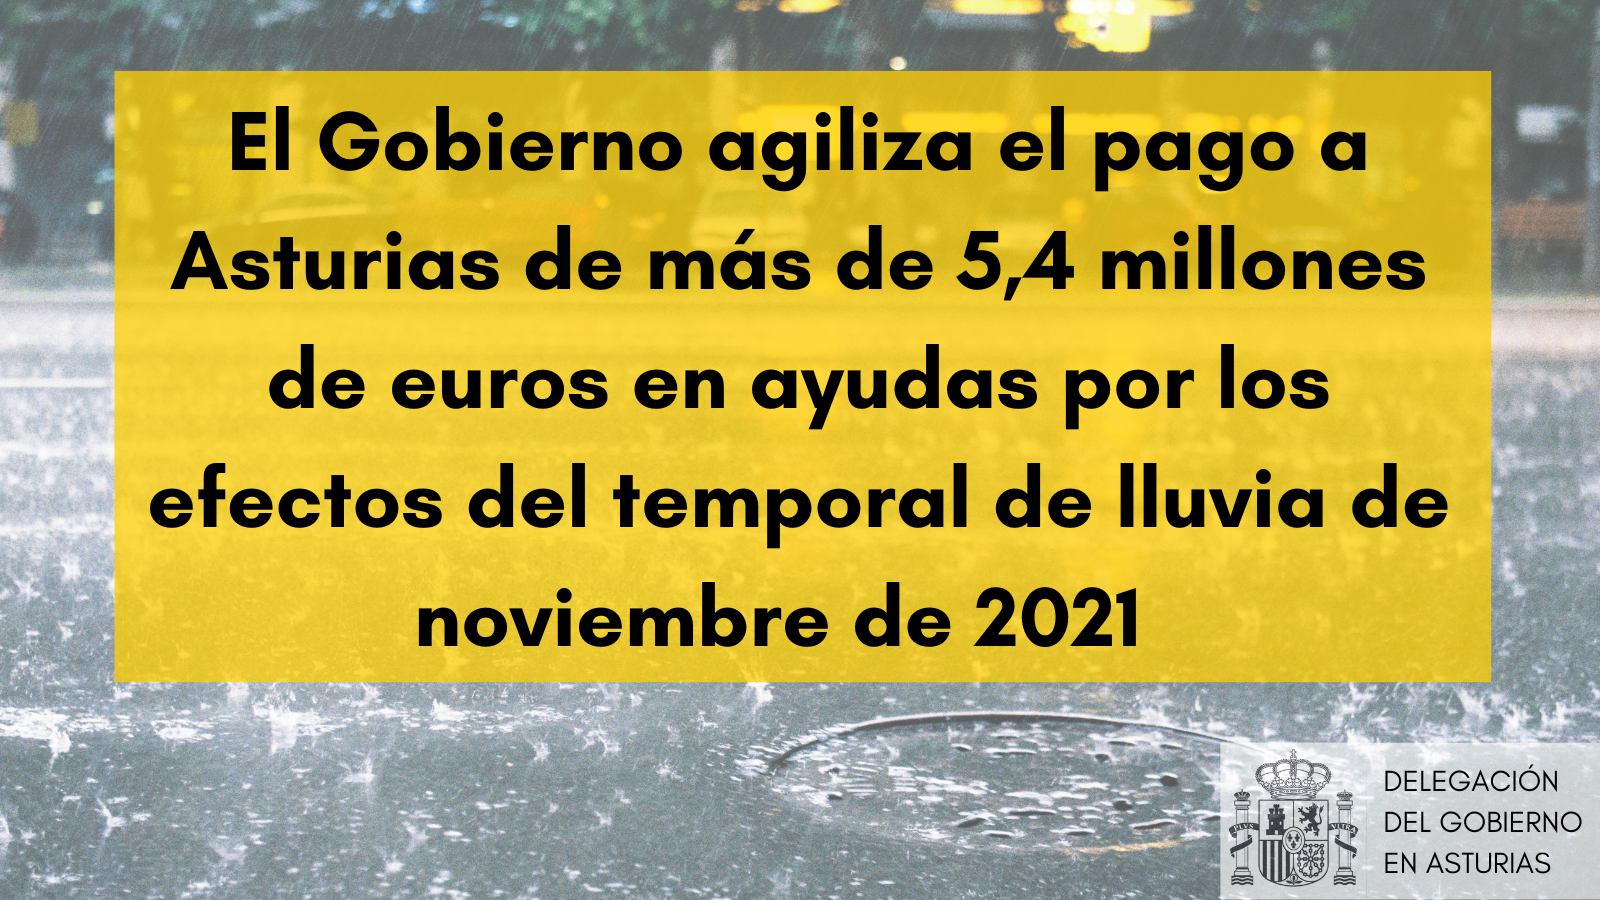 El Gobierno agiliza el pago a Asturias de más de 5,4 millones de euros en ayudas por los efectos del temporal de lluvia de noviembre de 2021